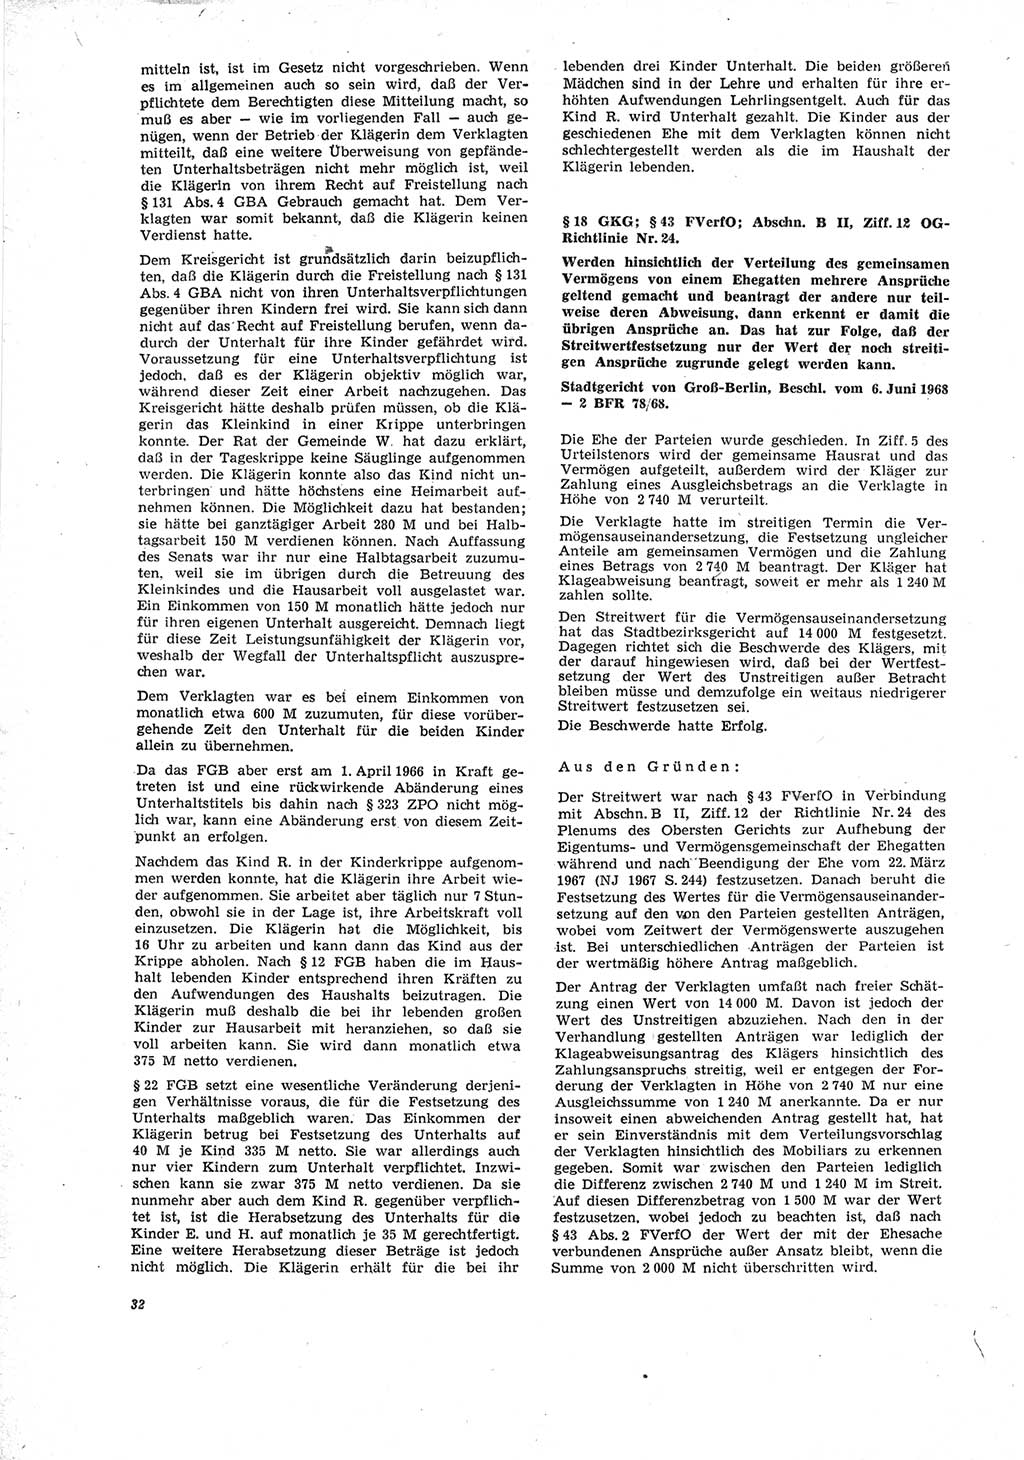 Neue Justiz (NJ), Zeitschrift für Recht und Rechtswissenschaft [Deutsche Demokratische Republik (DDR)], 23. Jahrgang 1969, Seite 32 (NJ DDR 1969, S. 32)